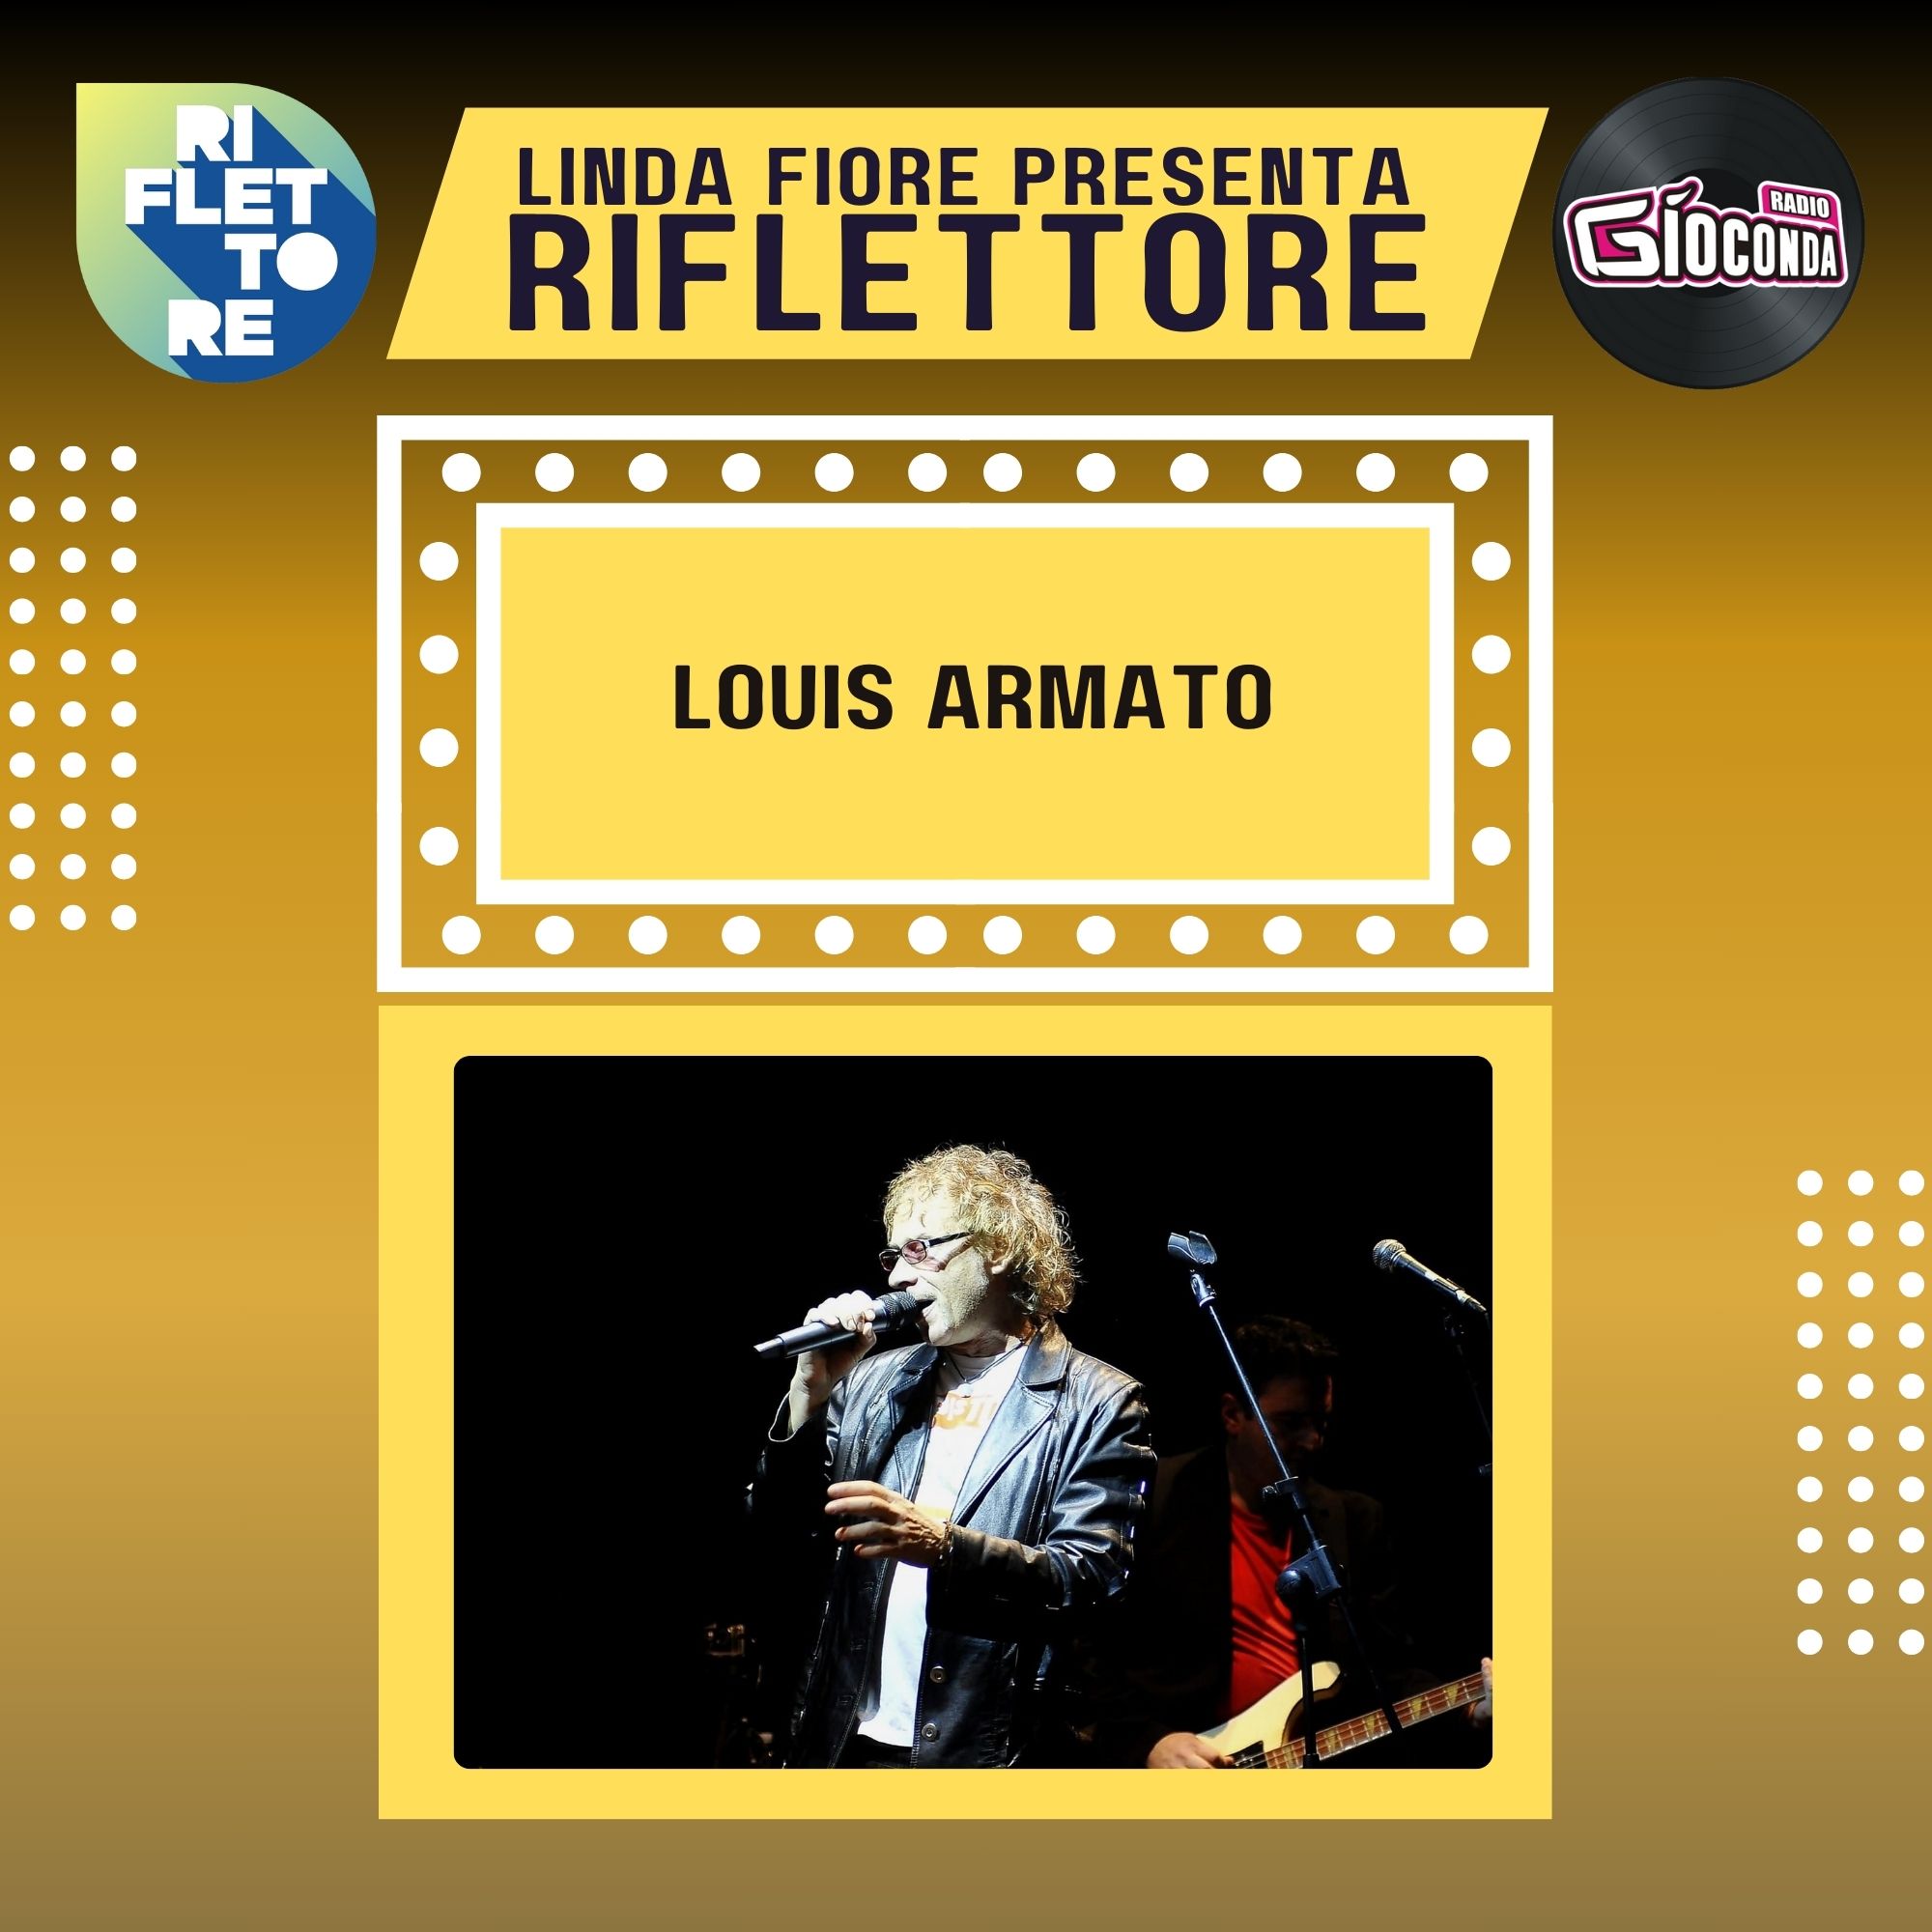 Riflettore con il chitarrista, cantante e autore Louis Armato